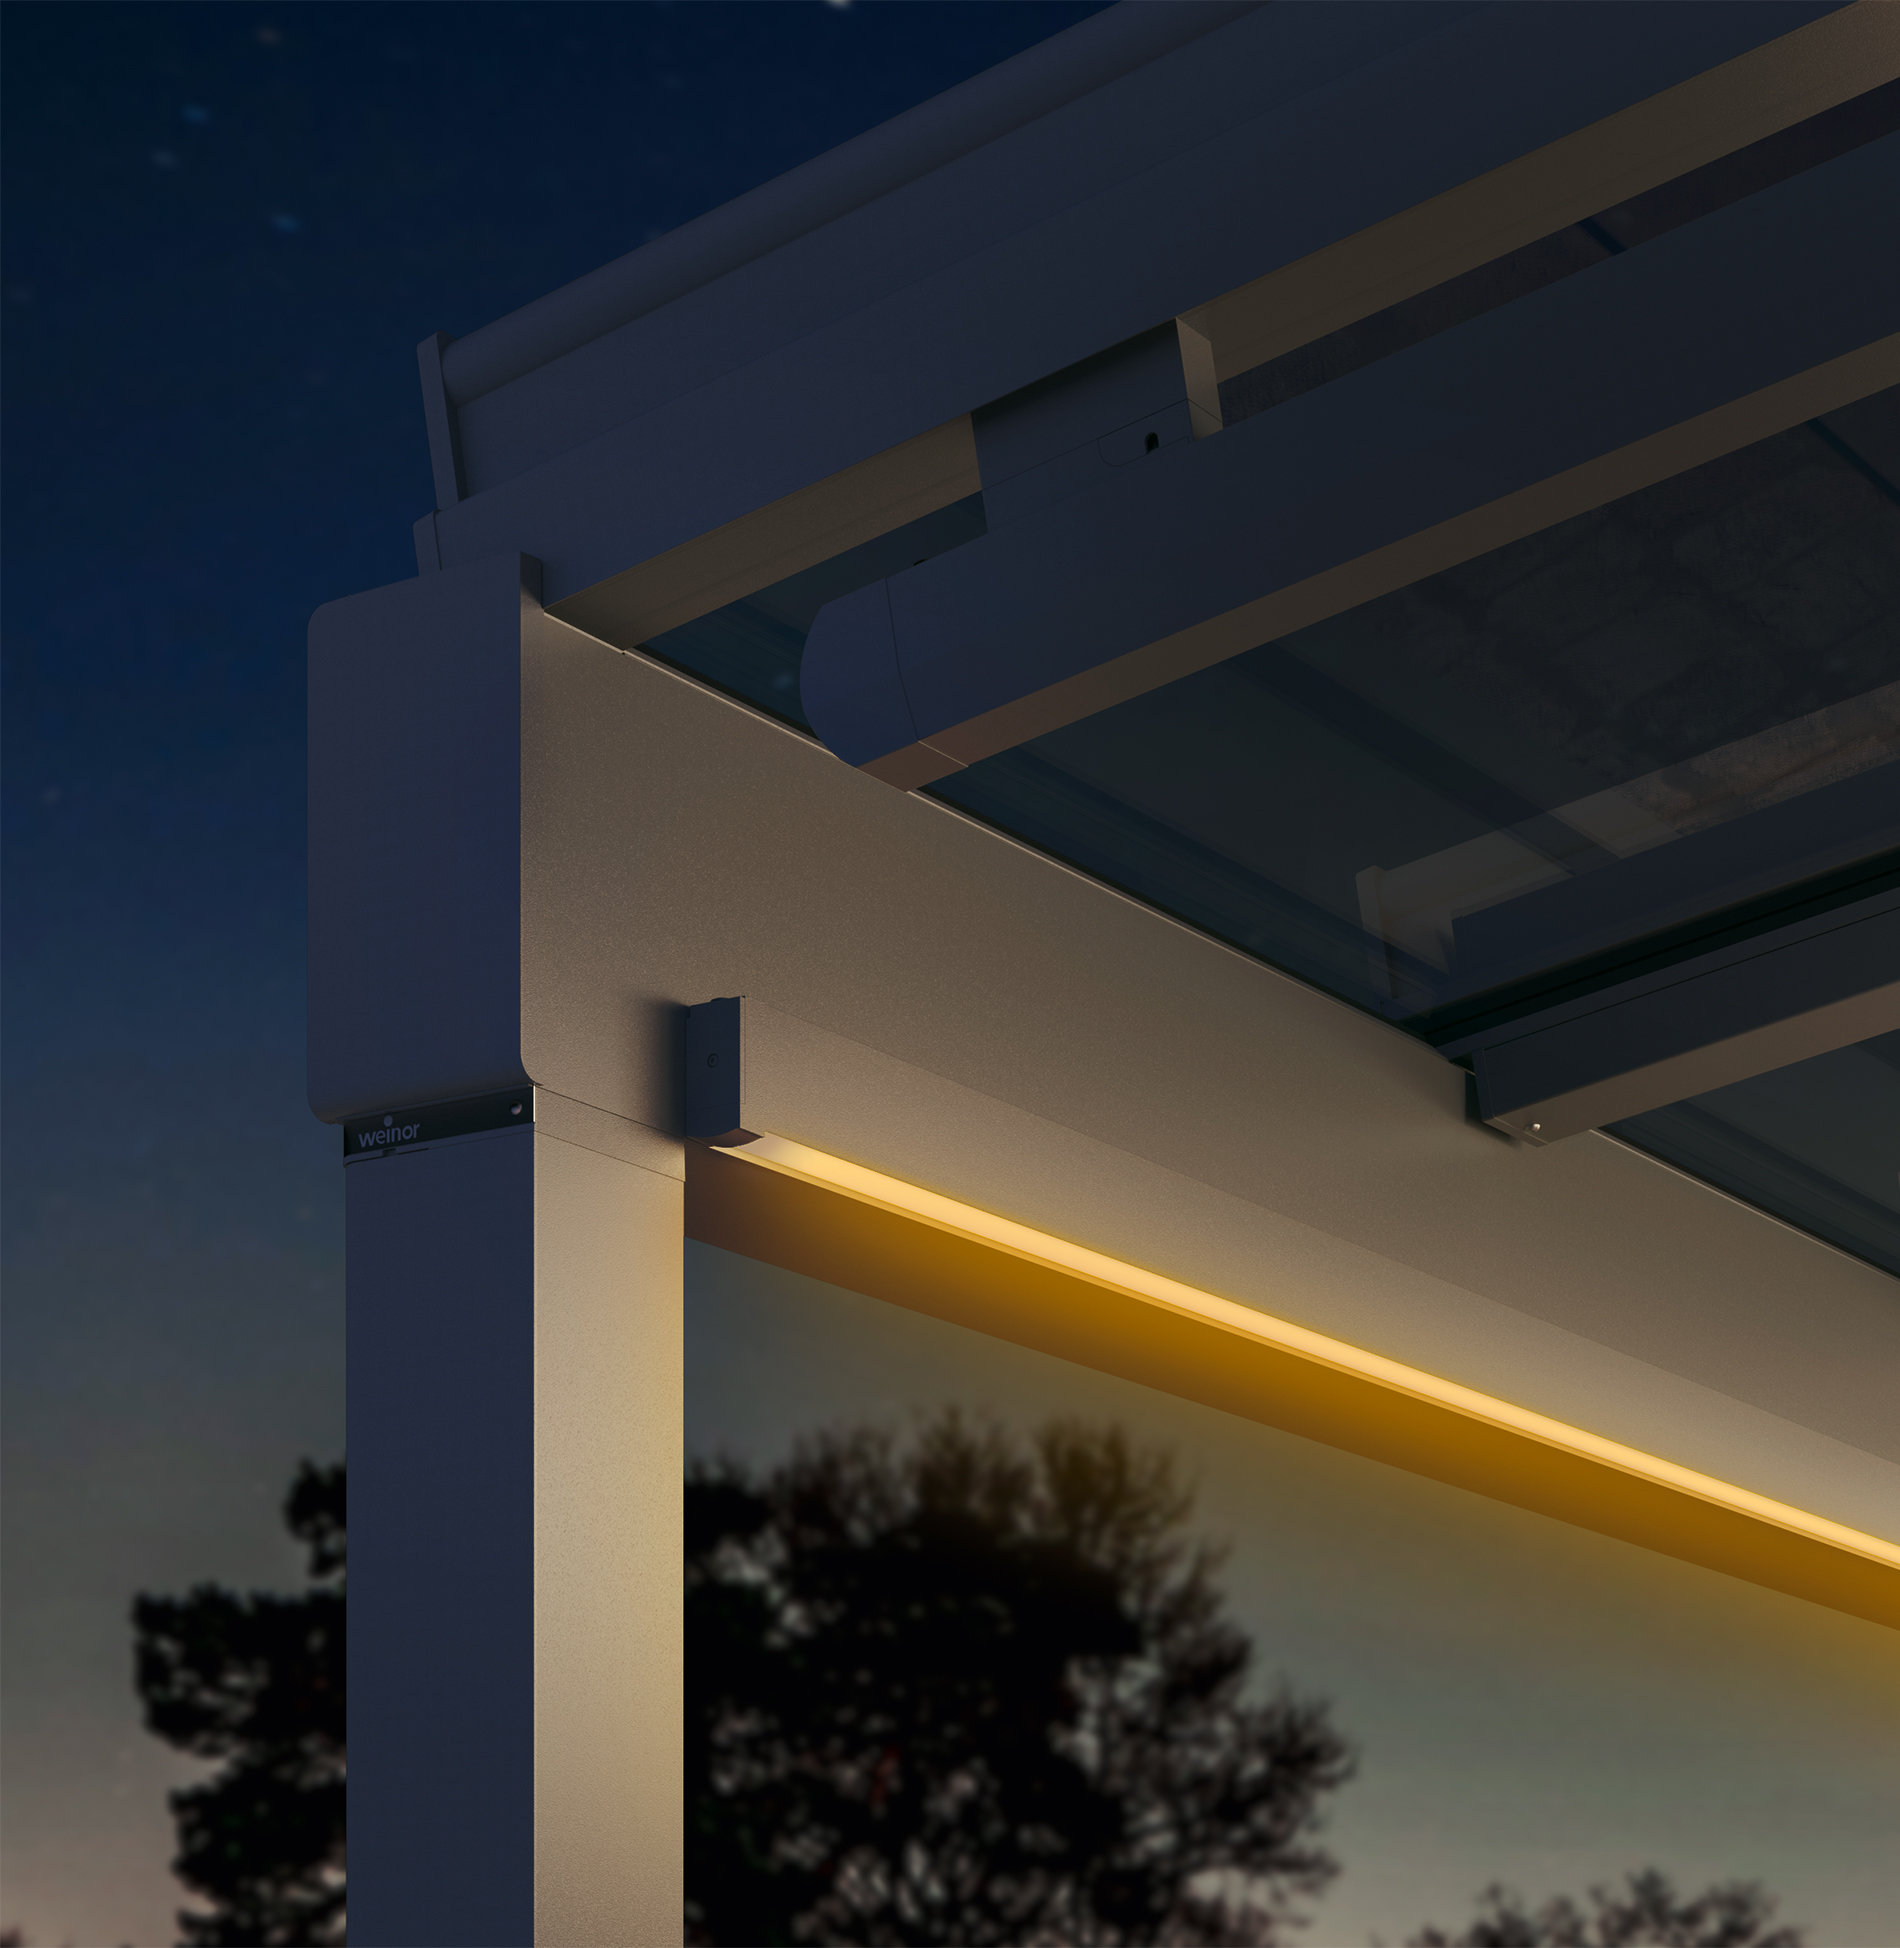 Detailansicht einer integrierten Beleuchtung in eine Glasdach-Pergola